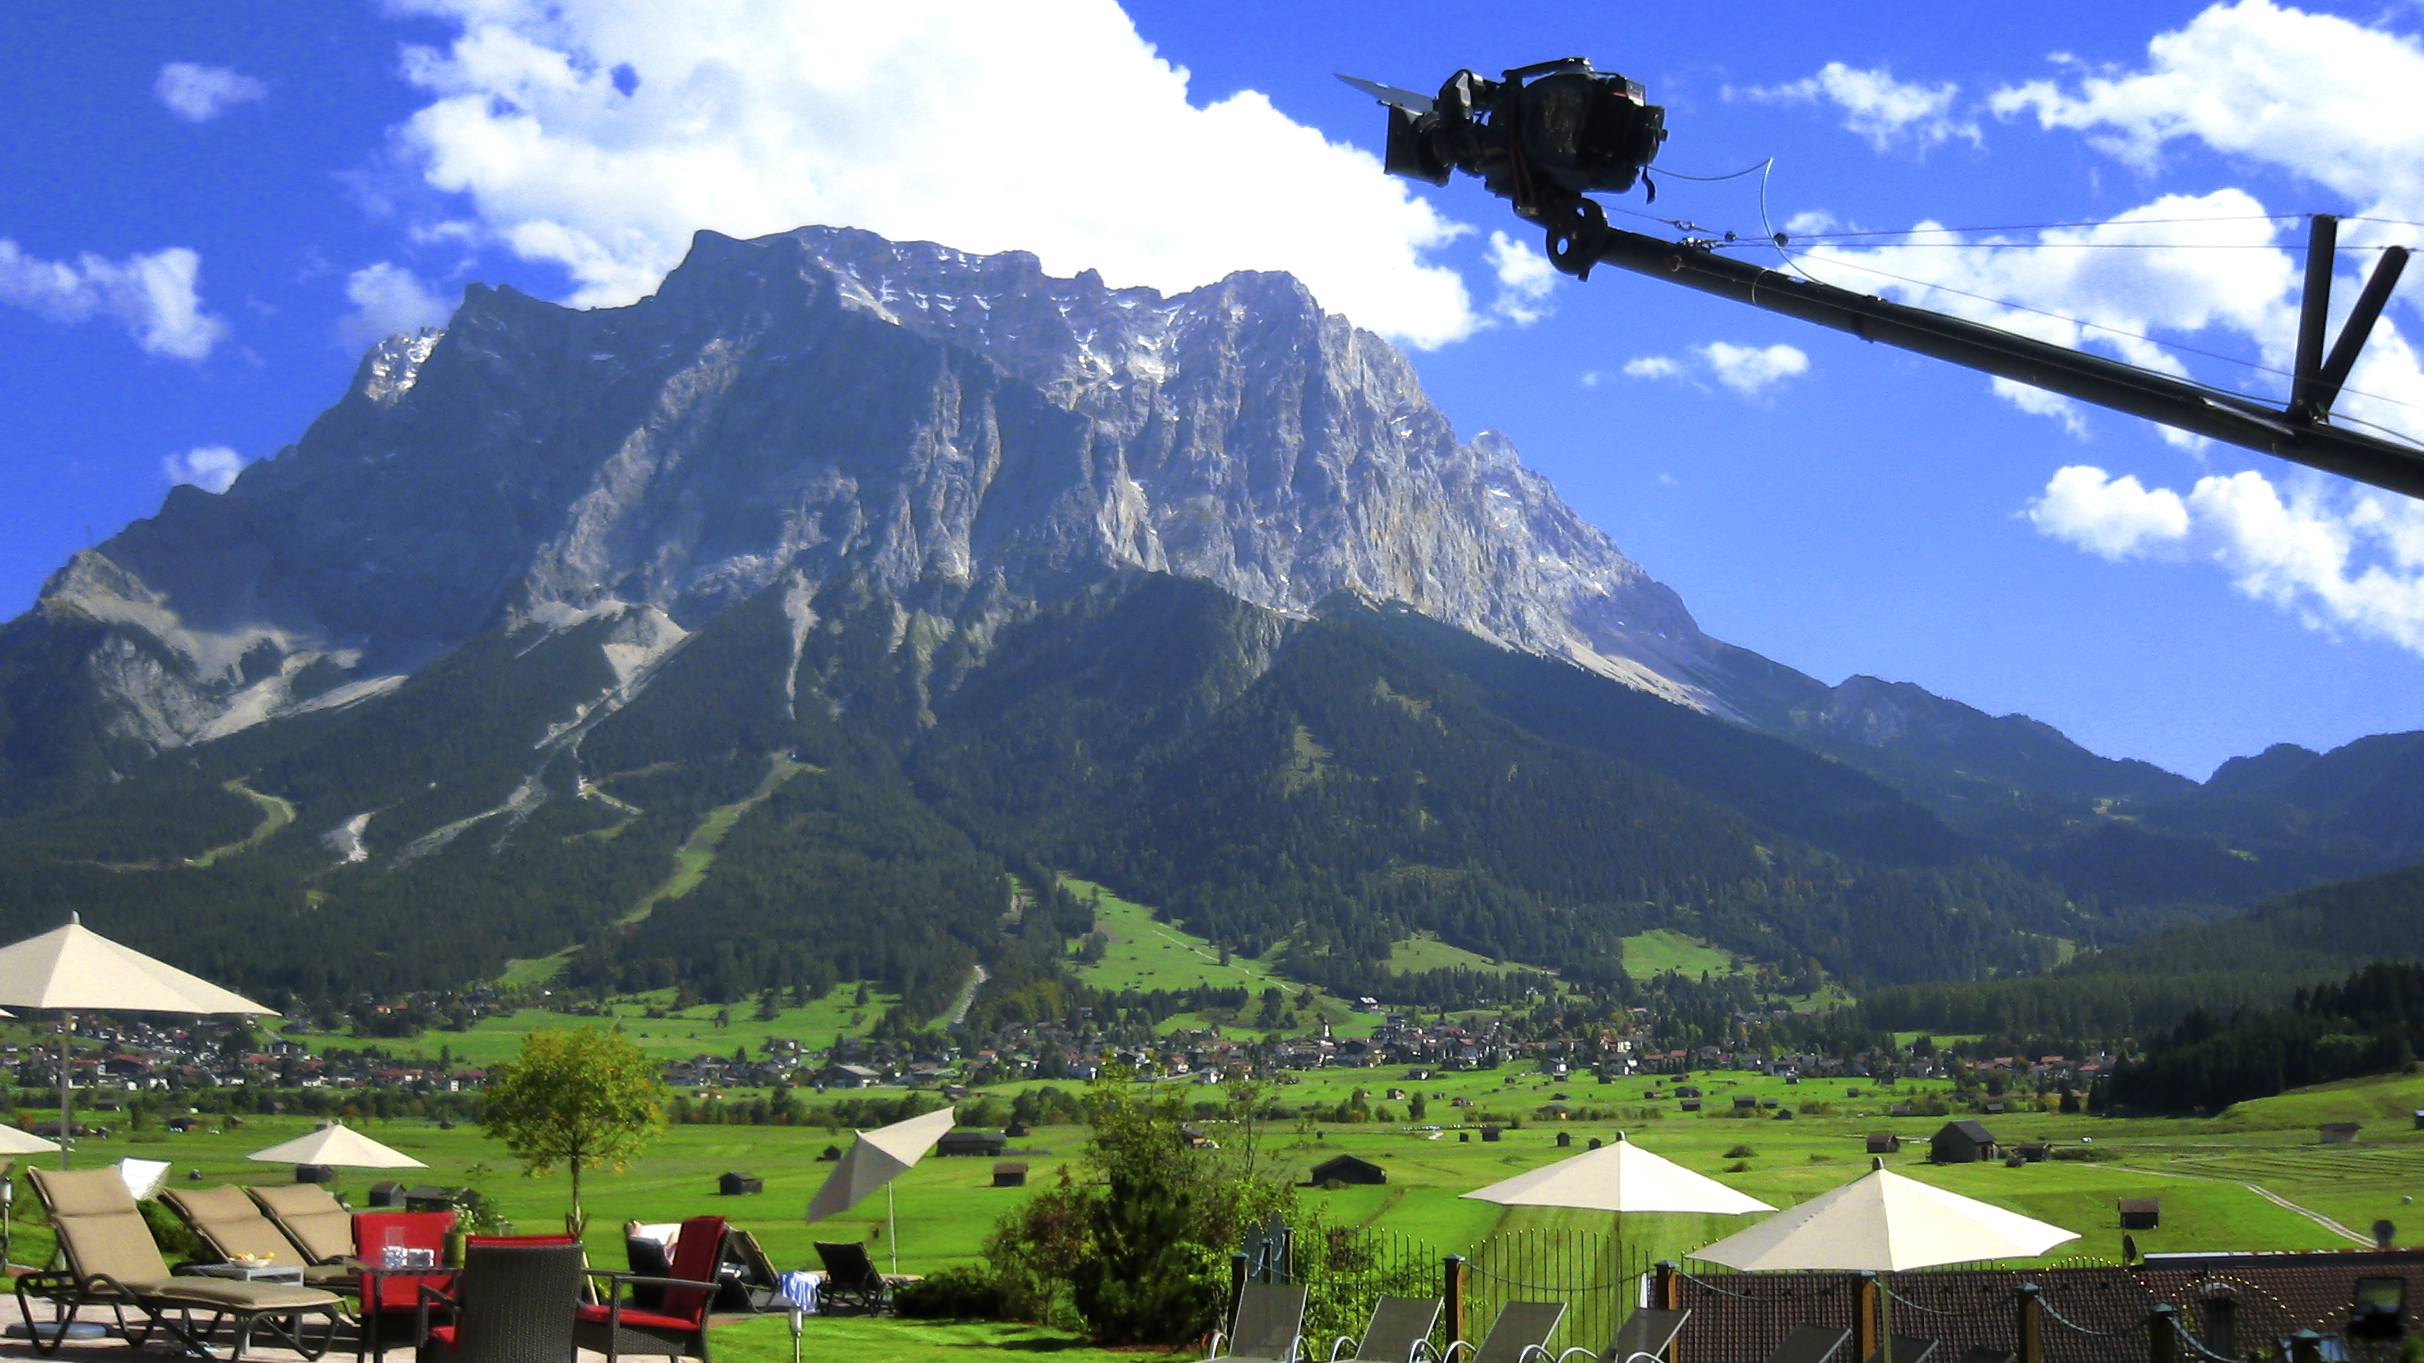 Film production in Austria